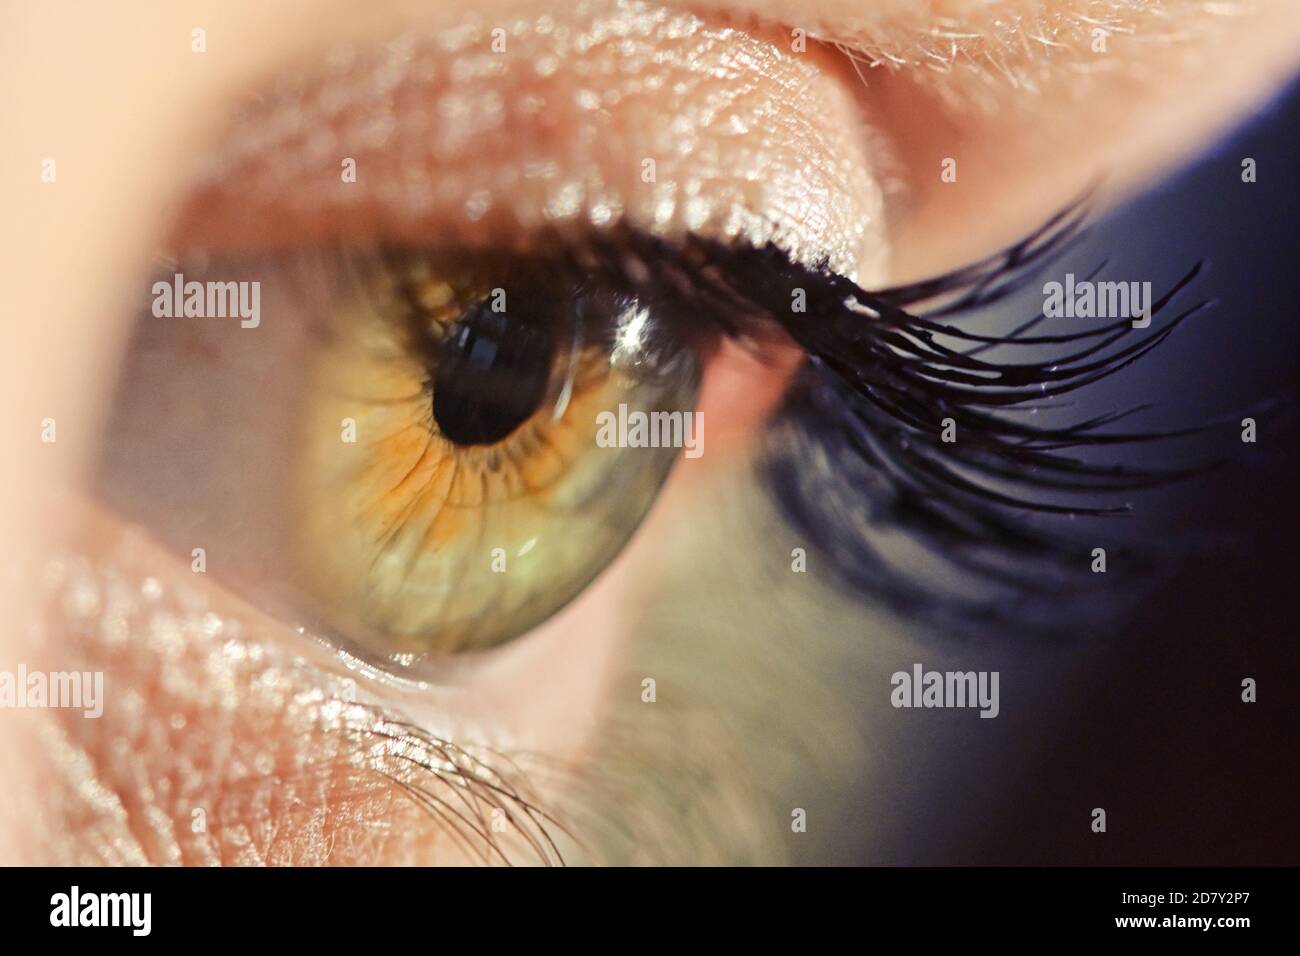 Détails de la vue macro Human Eye avec lumière naturelle Banque D'Images